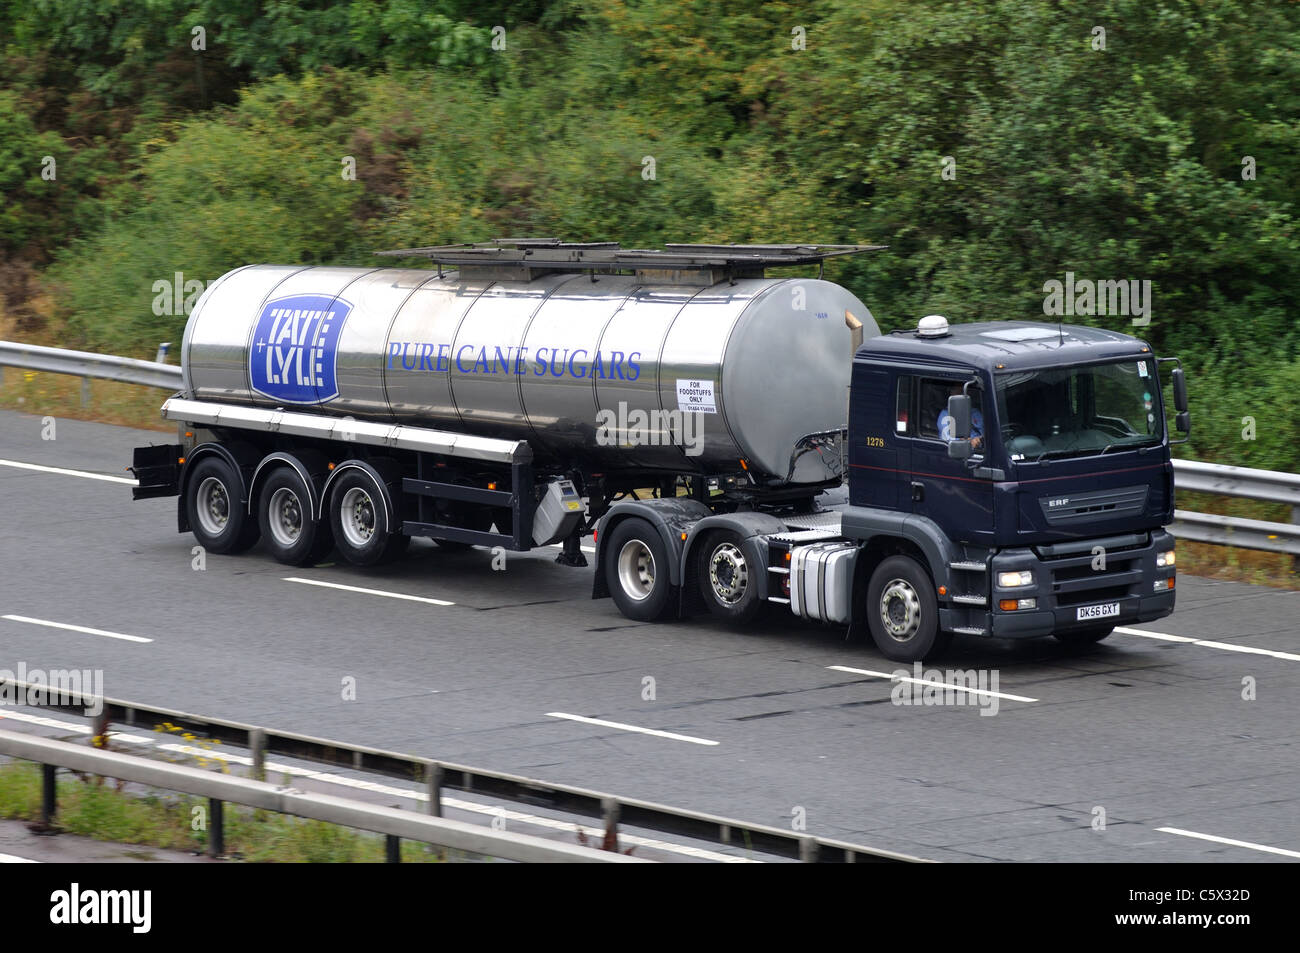 Tate and Lyle sugar tanker on M40 motorway, Warwickshire, UK Stock Photo